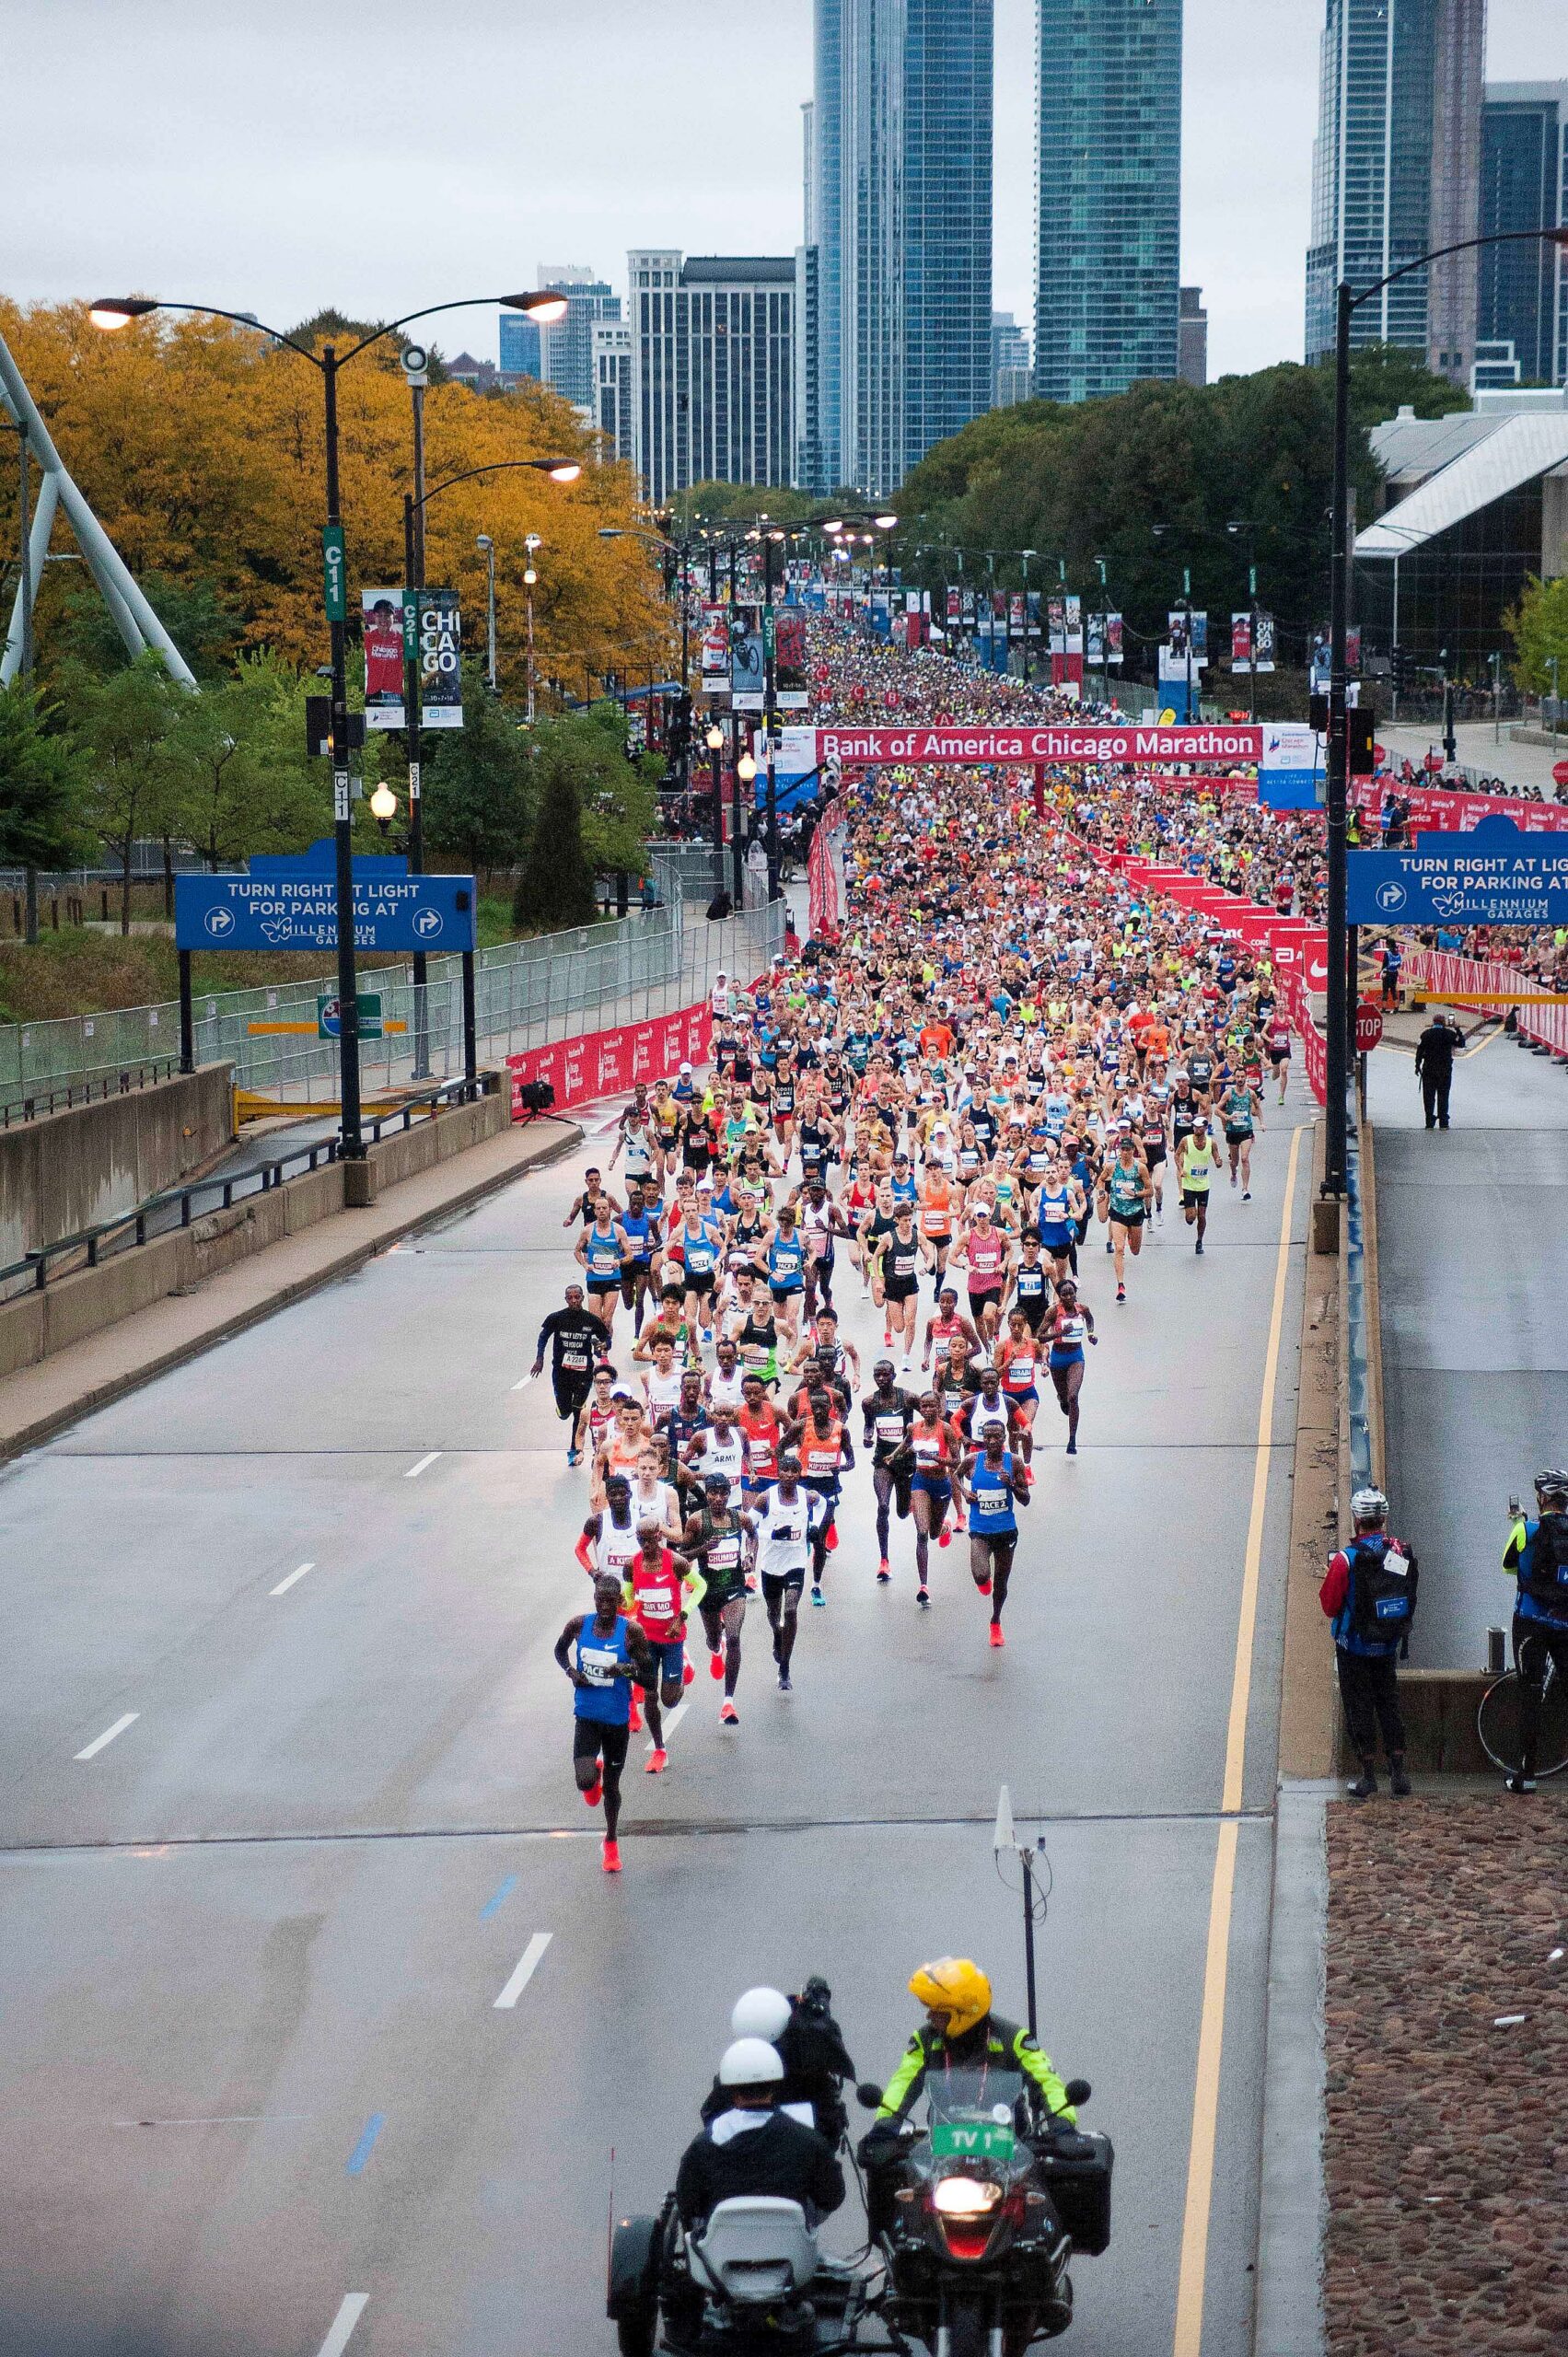 Chicago Marathon 2021 Golden Marathon Tours